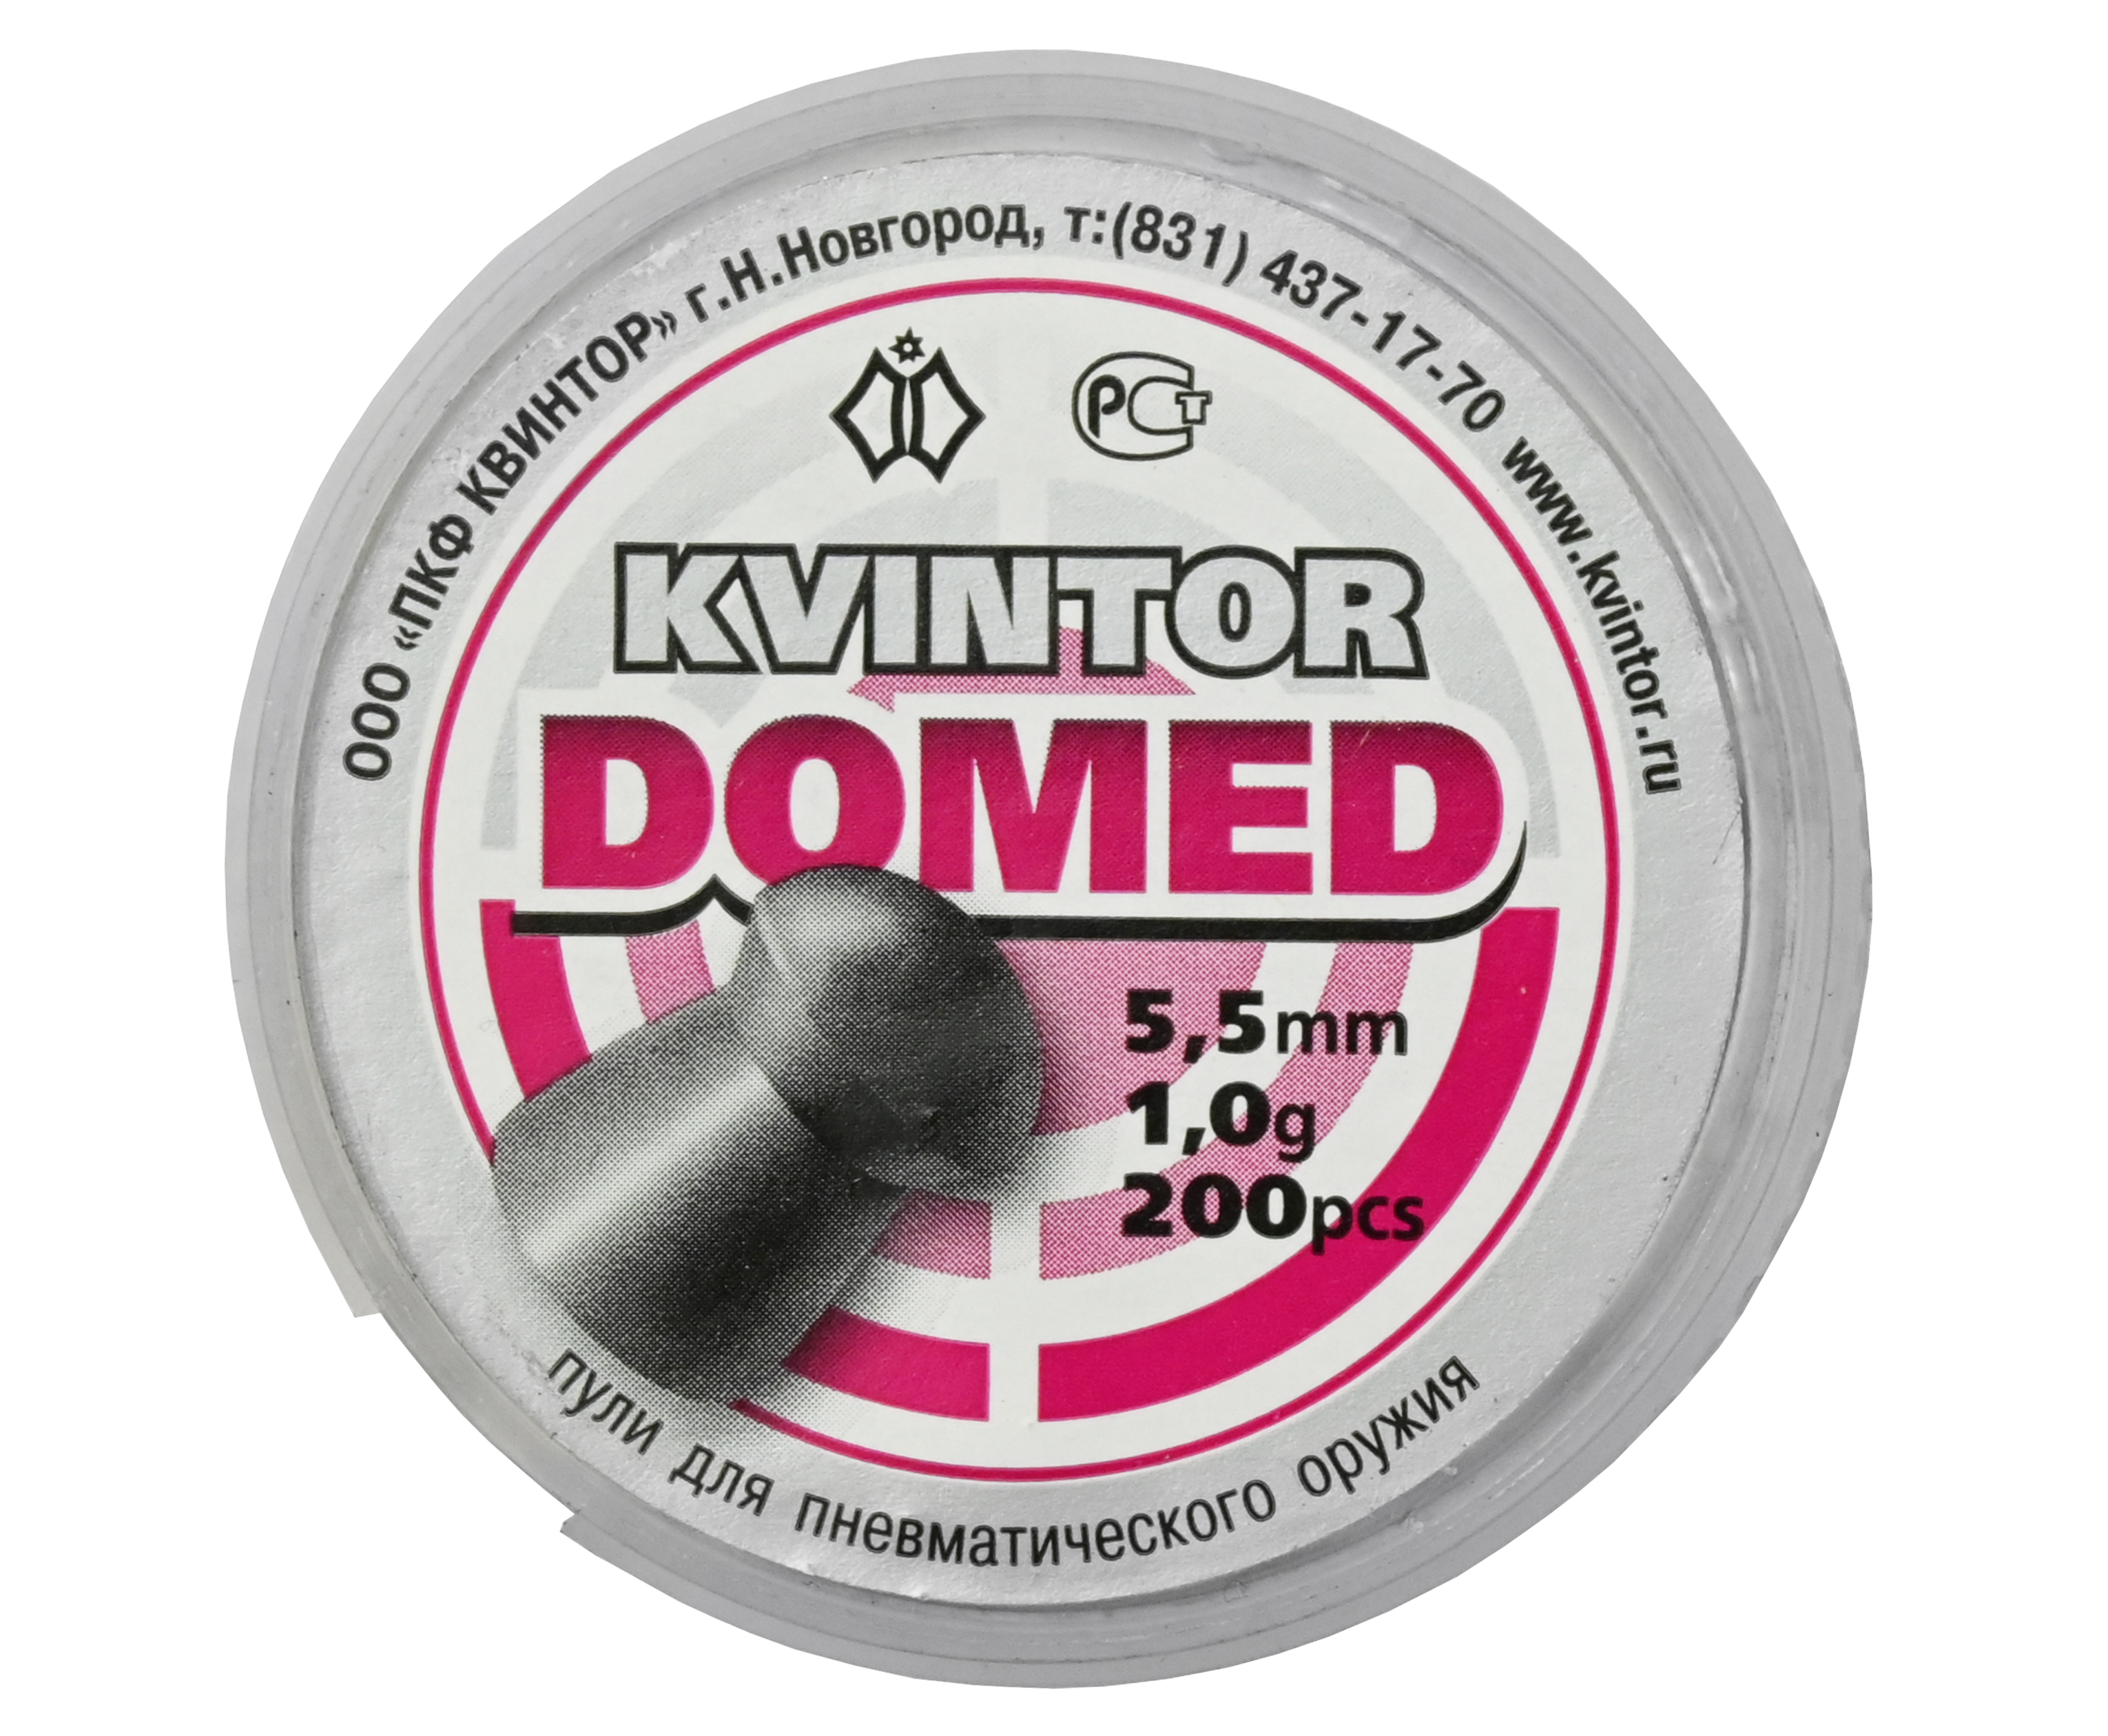 Пули пневматические Kvintor Domed 5,5 mm, 1,0 гр. (200 шт)